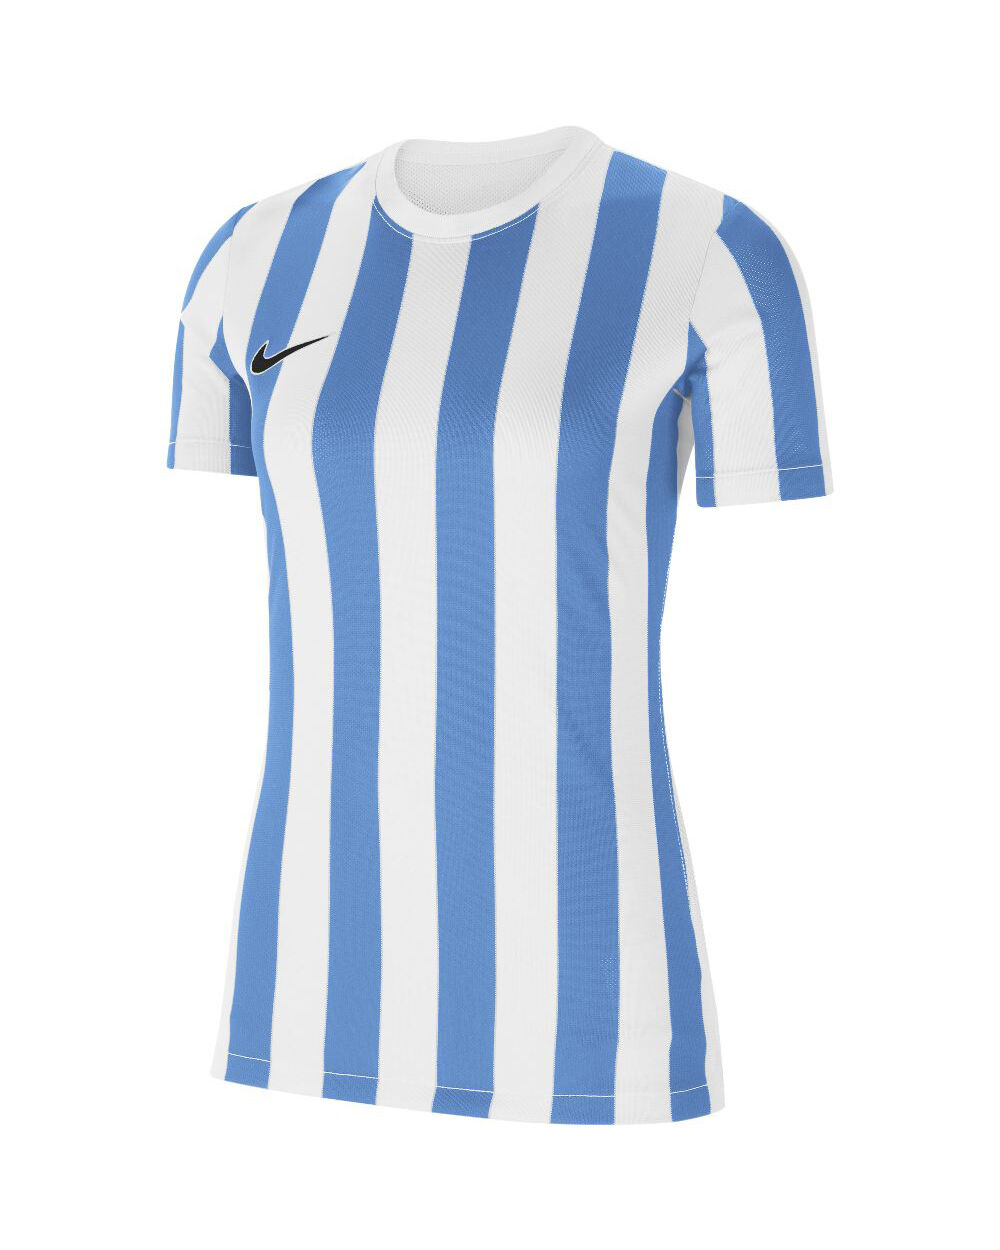 Nike Maglia Striped Division IV Bianco e Blu Bianco per Donne CW3816-103 L